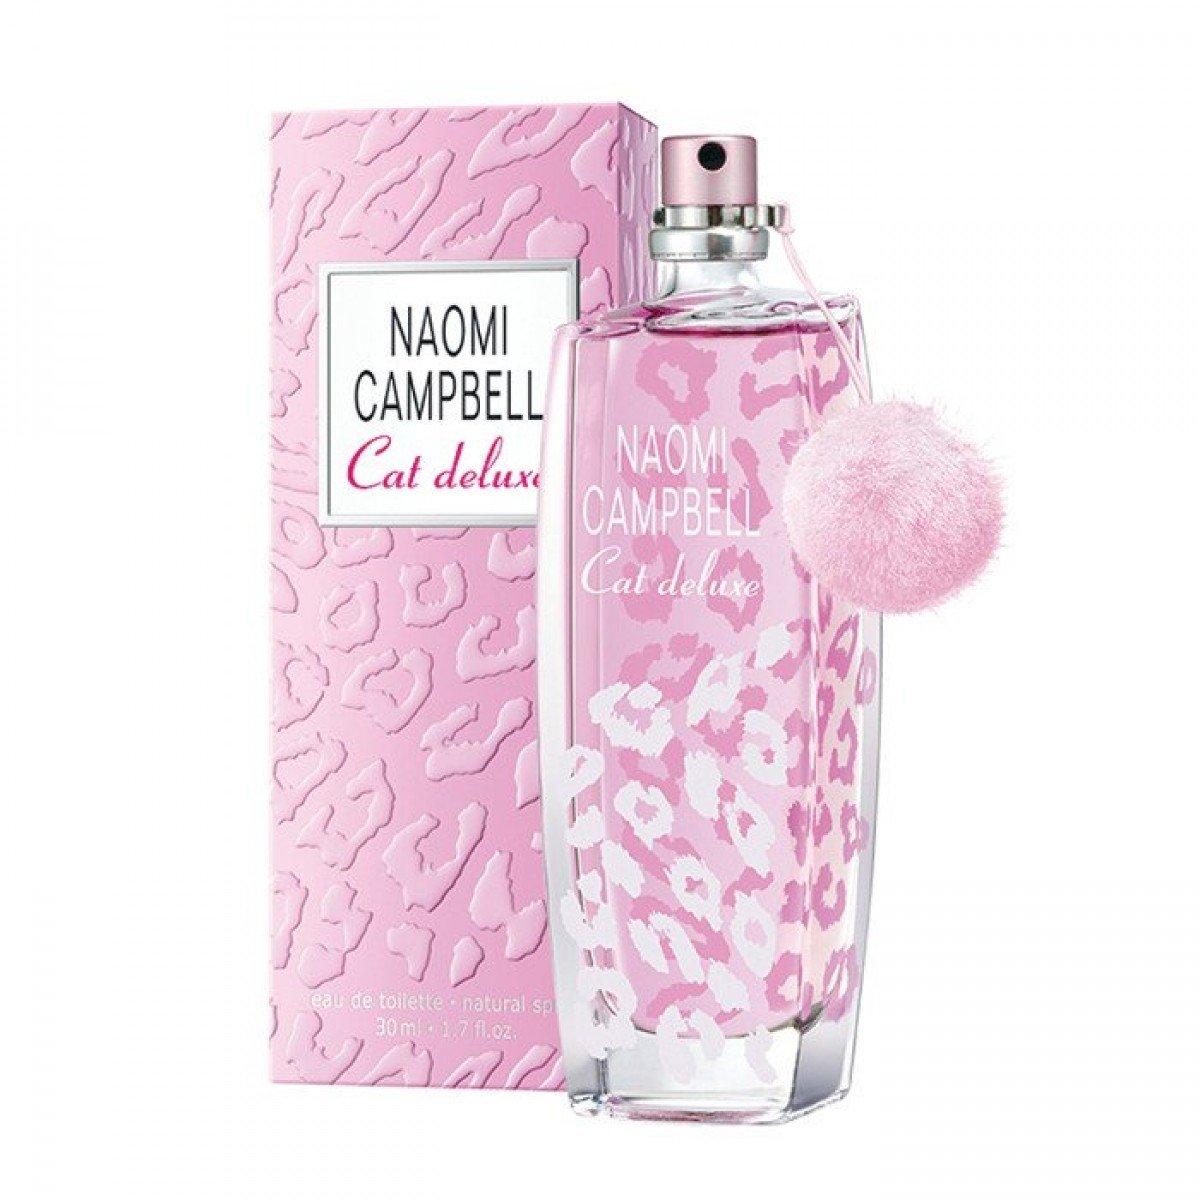 NAOMI CAMPBELL Ženski parfem Cat deluxe edt 30 ml NEW